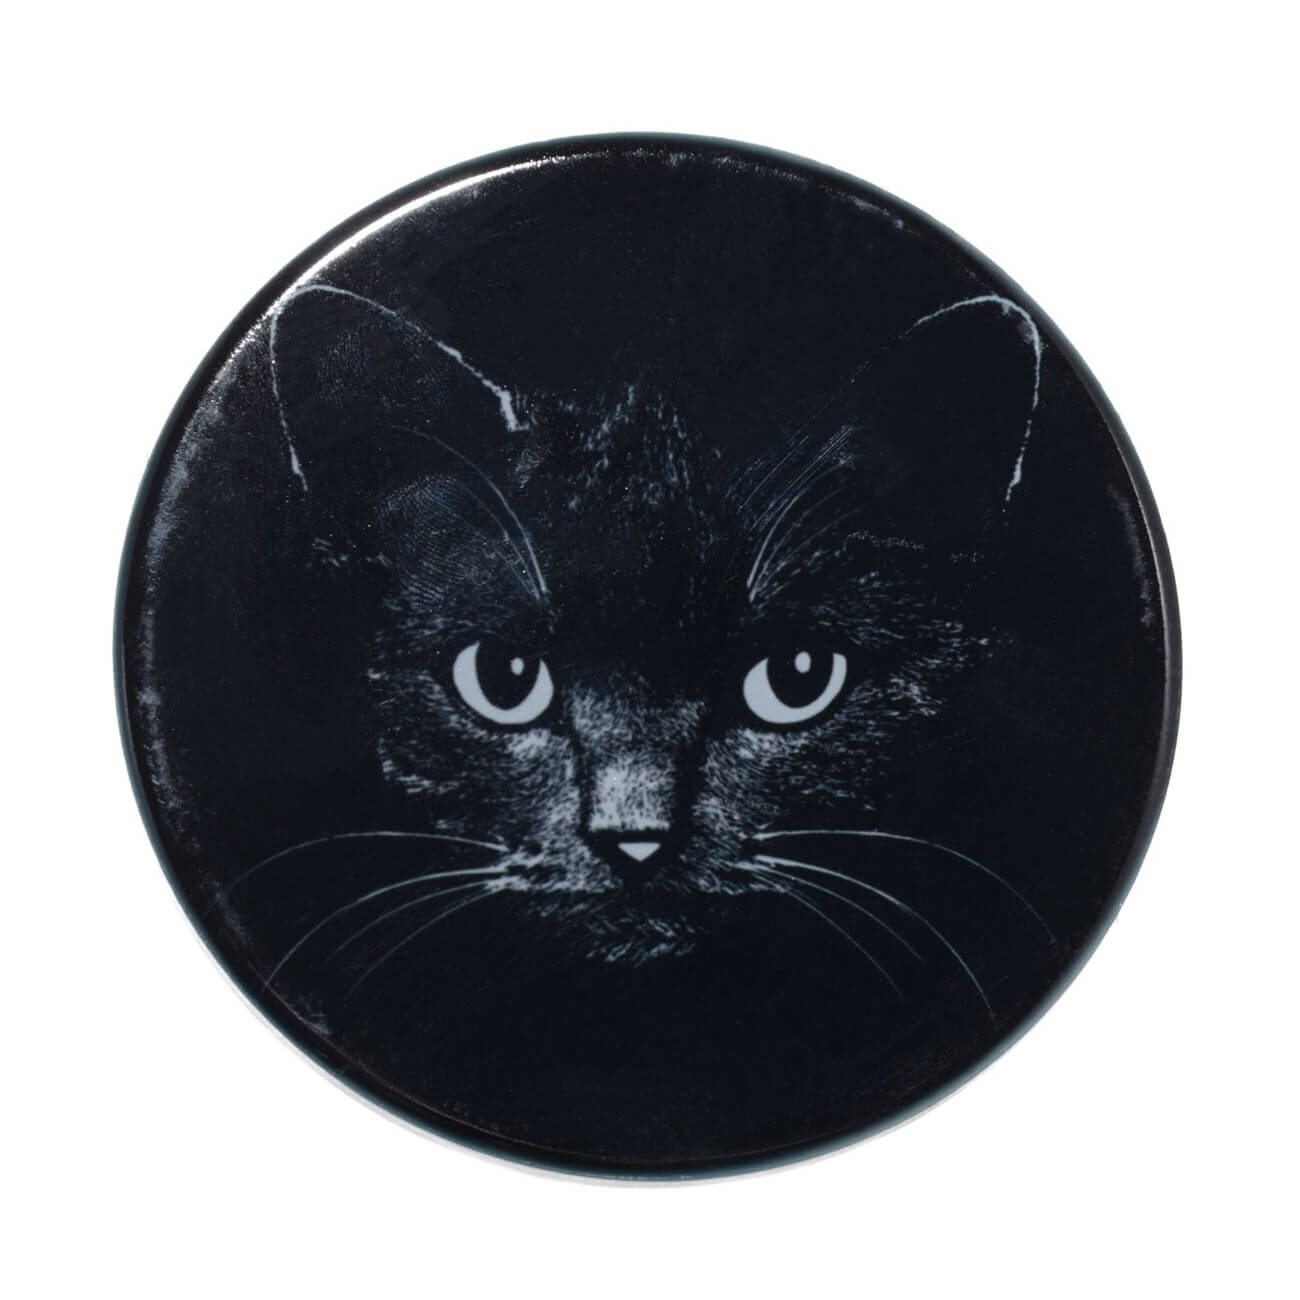 Подставка под кружку, 11x11 см, керамика/пробка, круглая, черная, Ночной кот, Cat night подставка интерьерная glasar с черная мрамором 25х25х62см